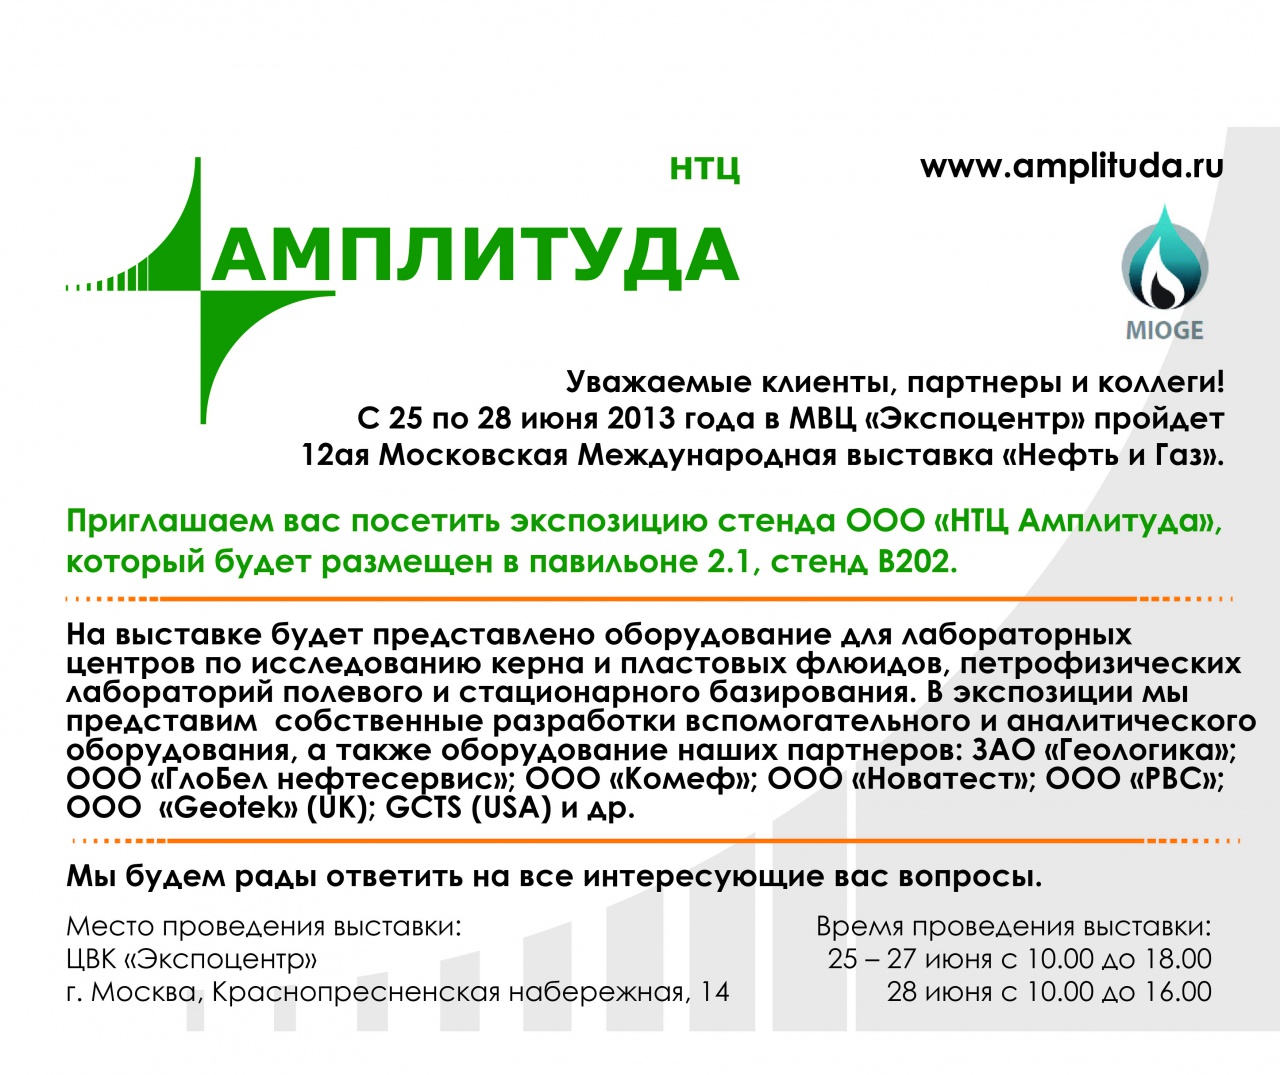 Приглашаем вас посетить экспозицию стенда ООО «НТЦ Амплитуда» на 12-ой Московской Международной выставке «Нефть и Газ»